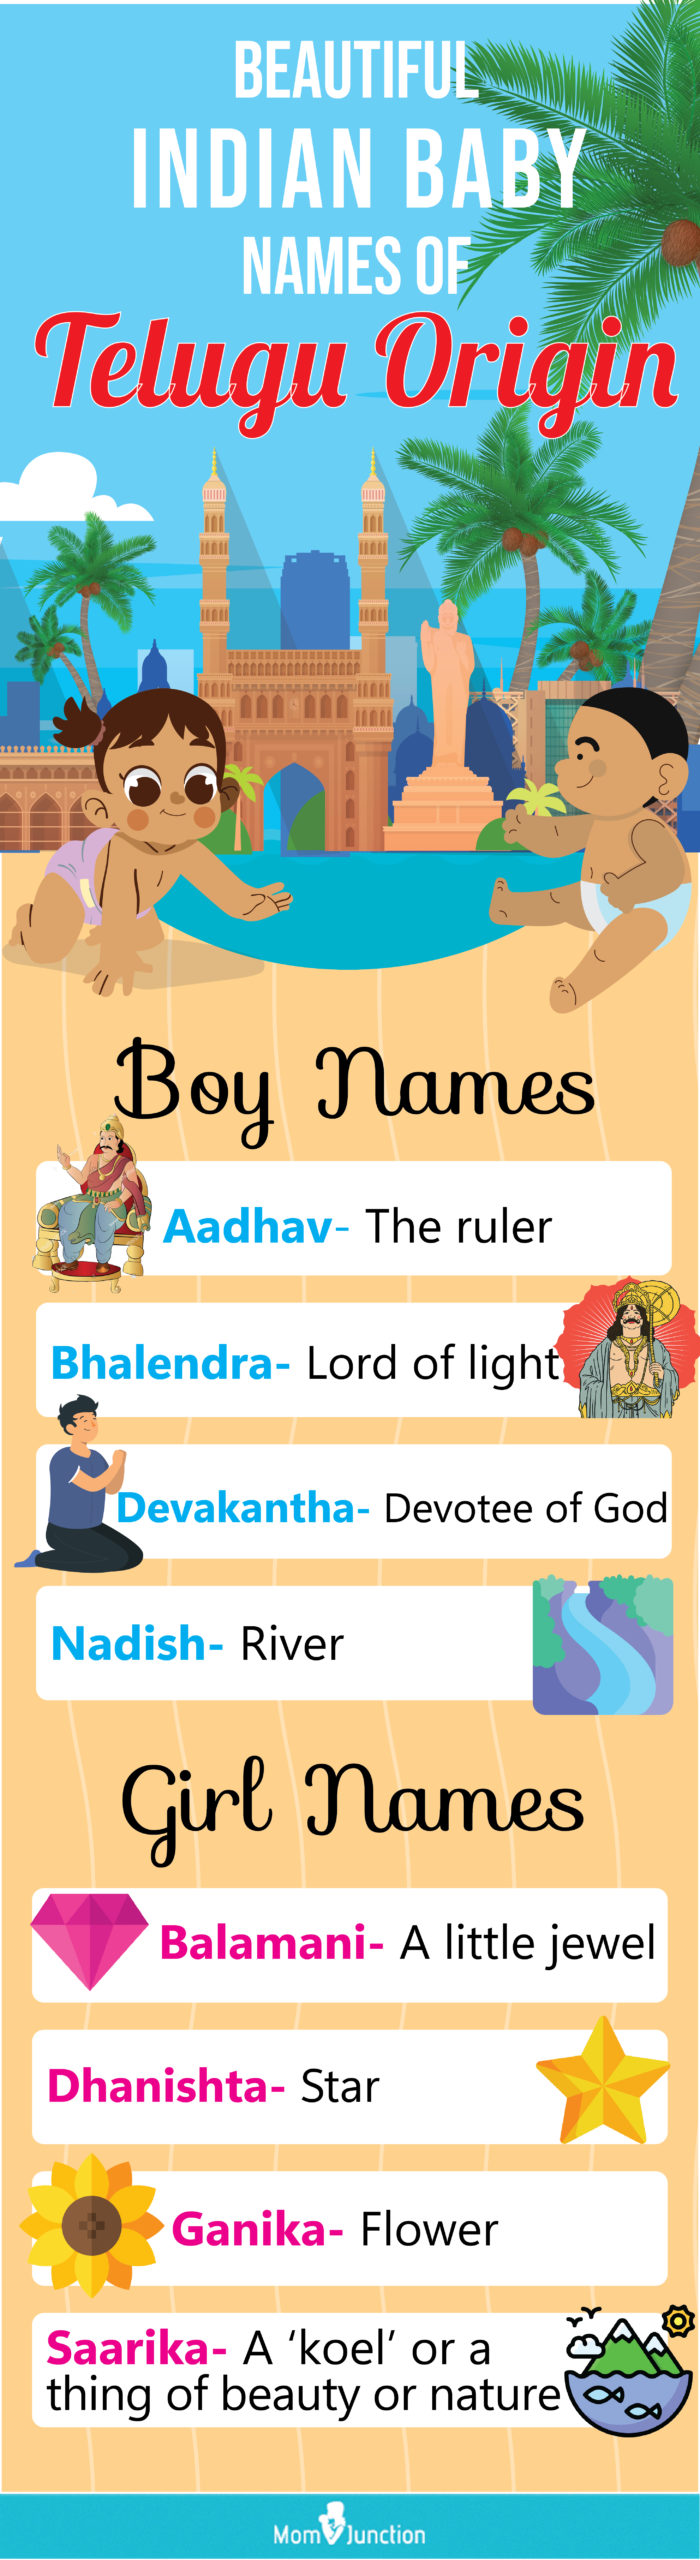 漂亮的印度婴儿名字来自泰卢固语(信息图)